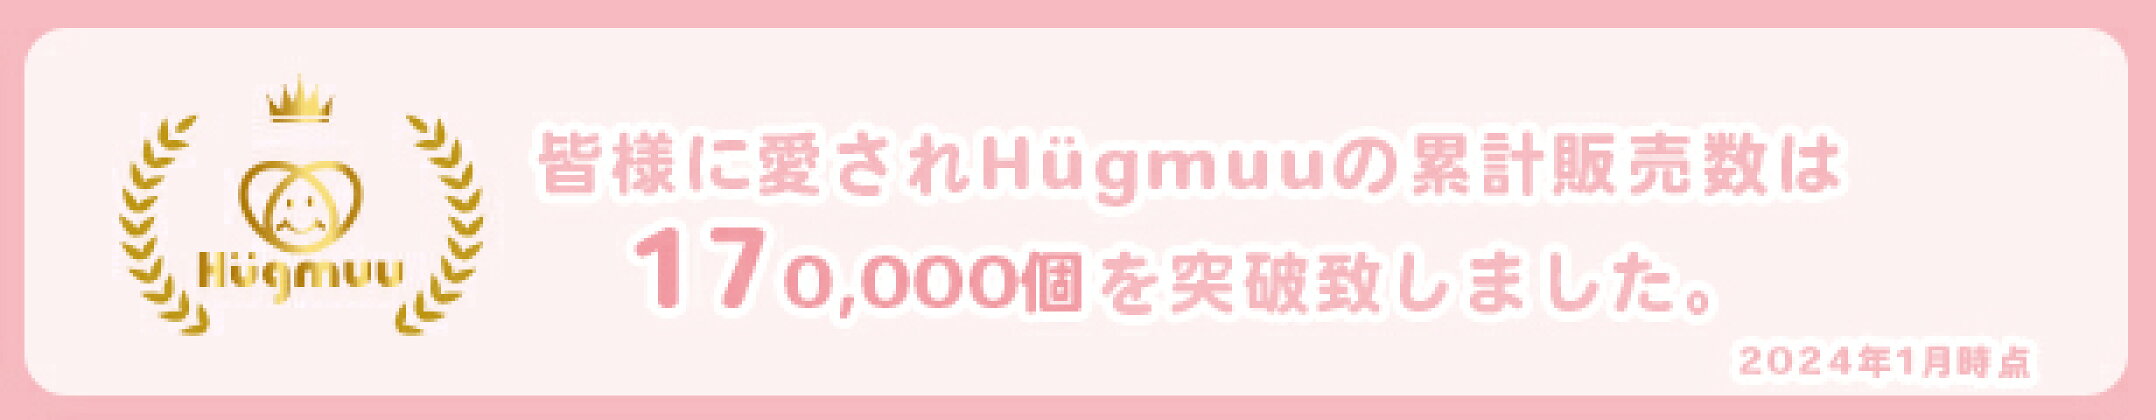 Hugmuuの累計販売数は170,000個を突破しました。